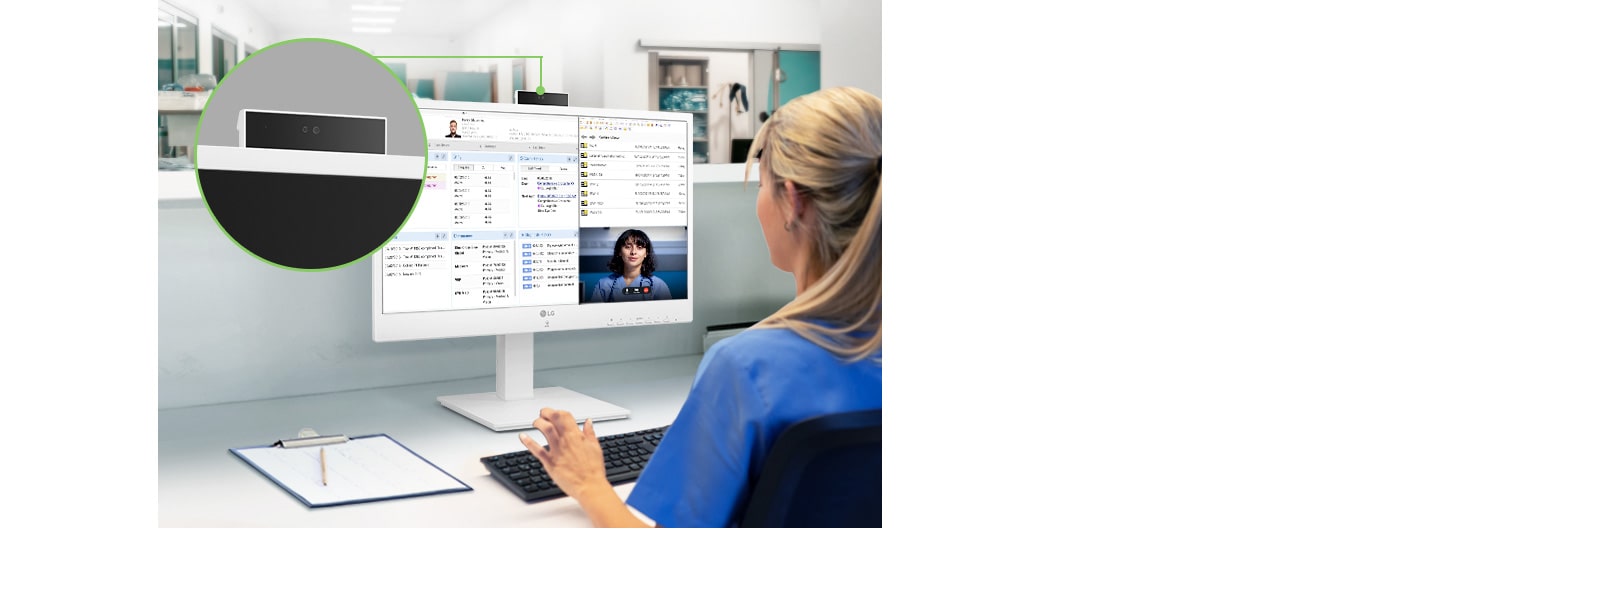 La webcam Full HD intégrée push-pull permet les soins médicaux à distance et les vidéoconférences.